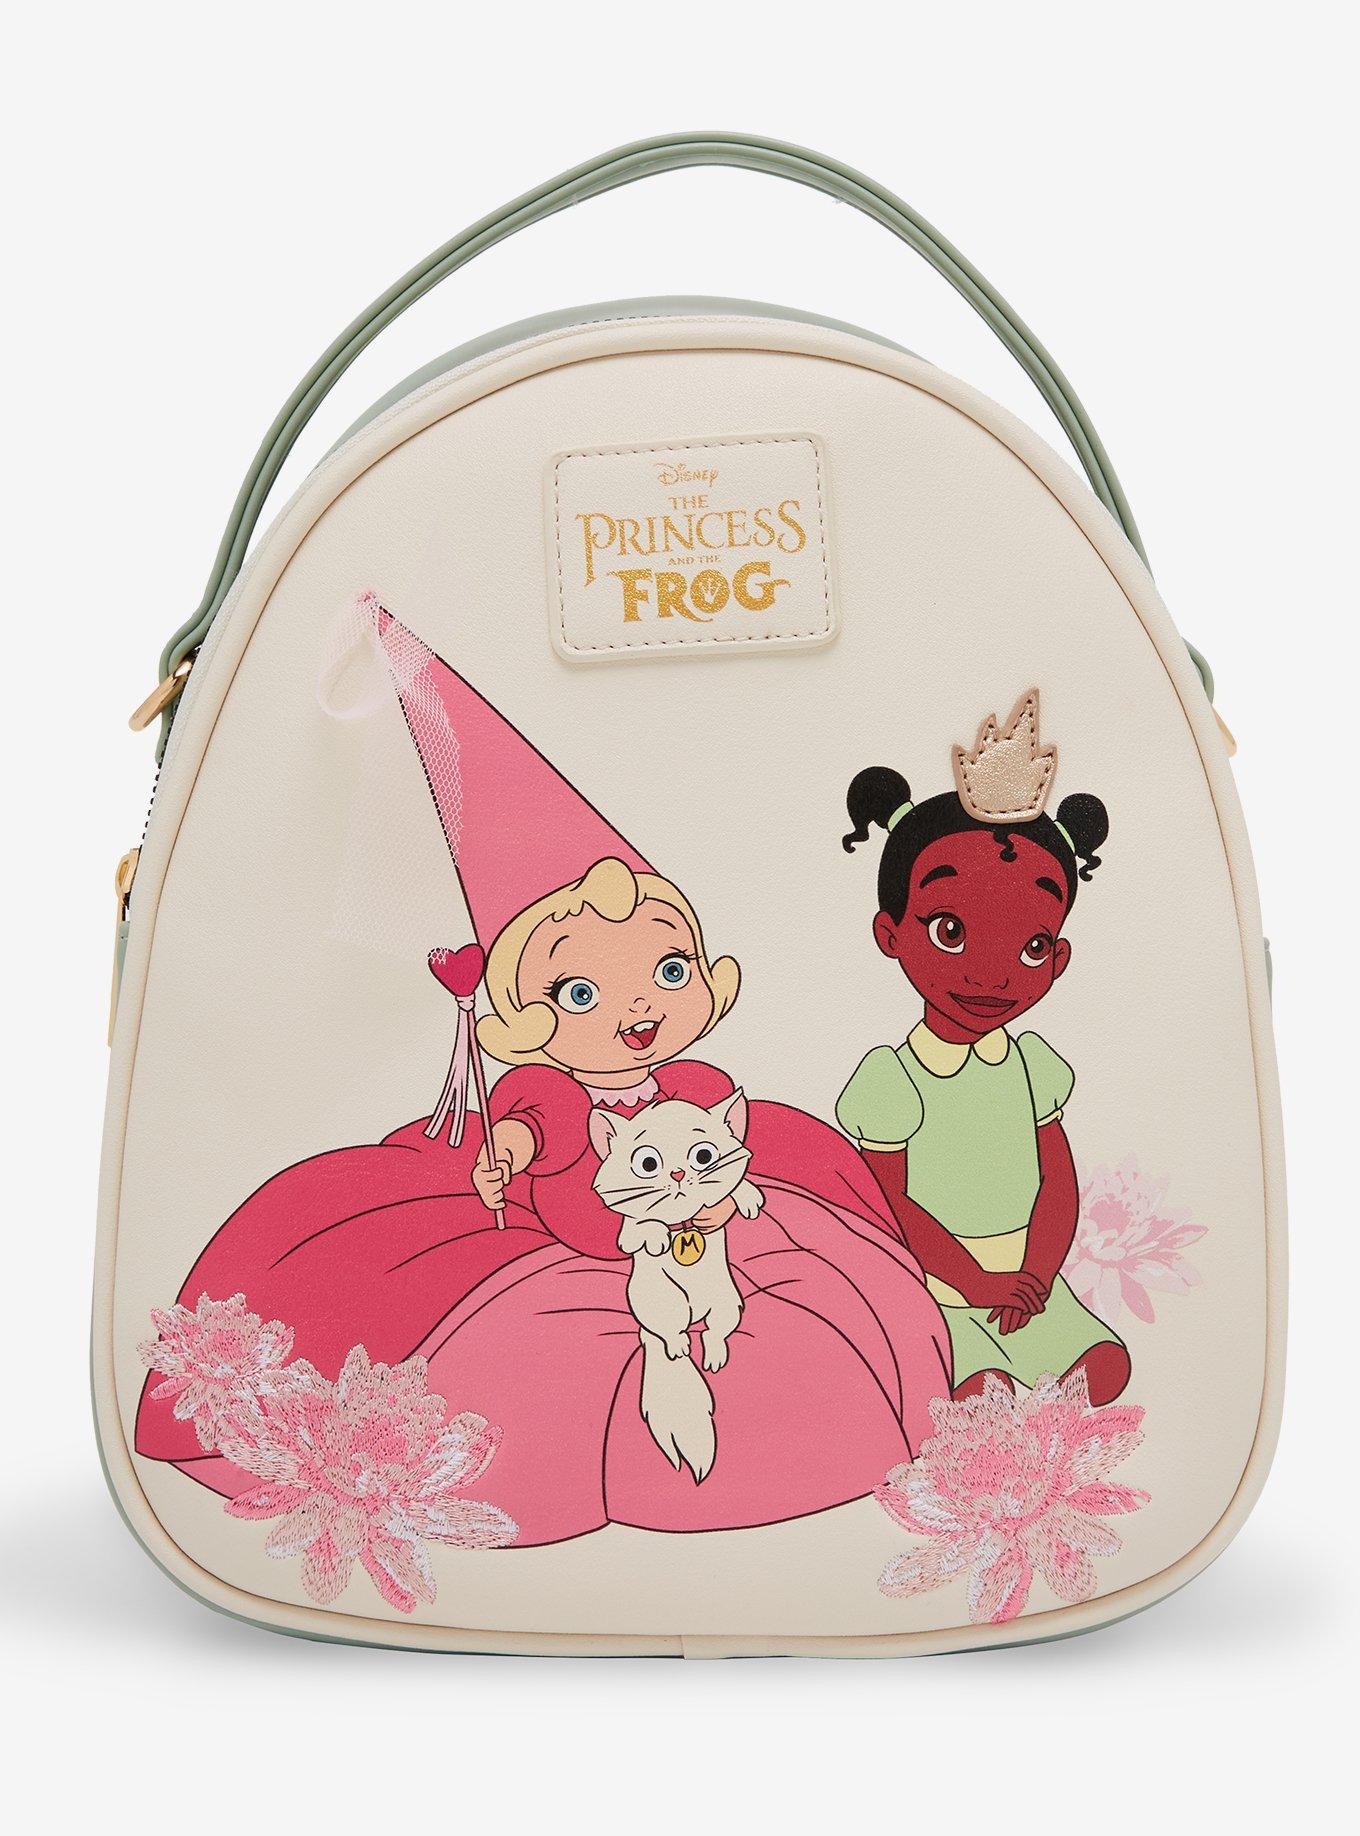 Disney Kids Backpack and Lunchbag Set Pink Princesses